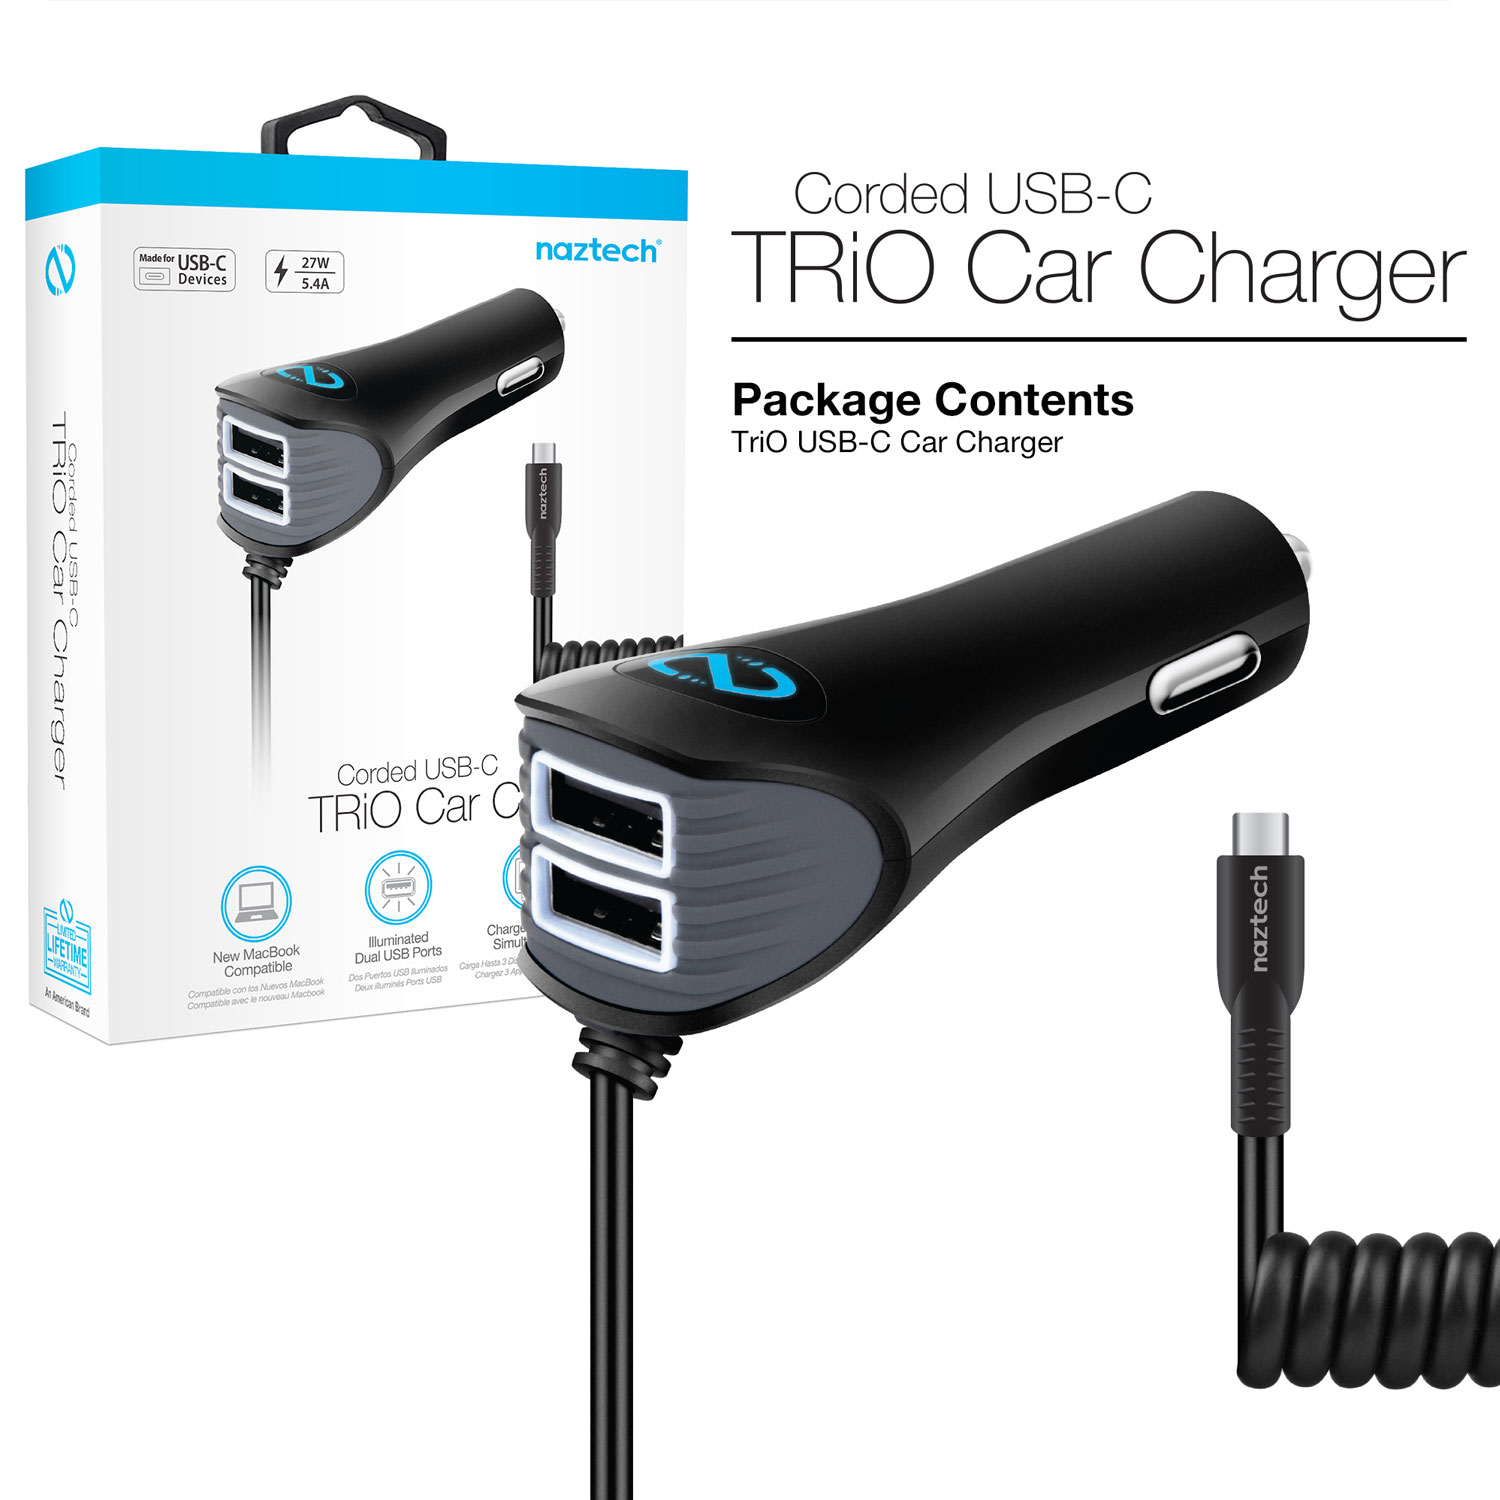 N420 Trio USB-C 5.4A Car Charger